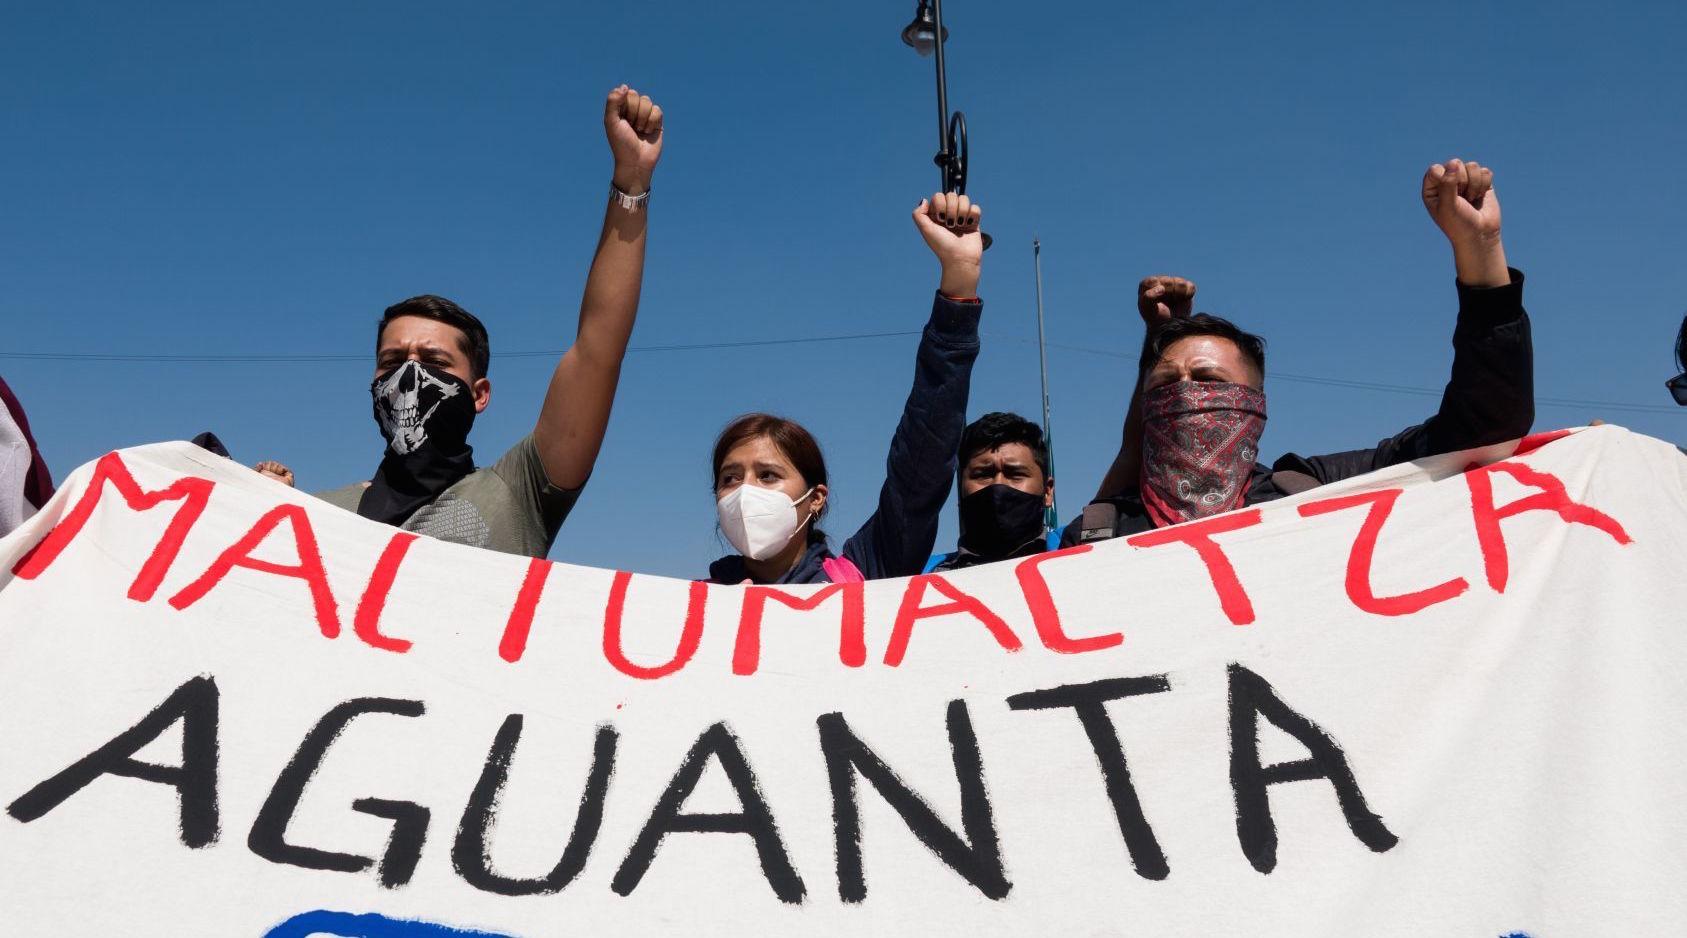 Vinculan a proceso a 74 normalistas en Chiapas por robo, daños y motín; seguirán el proceso en libertad